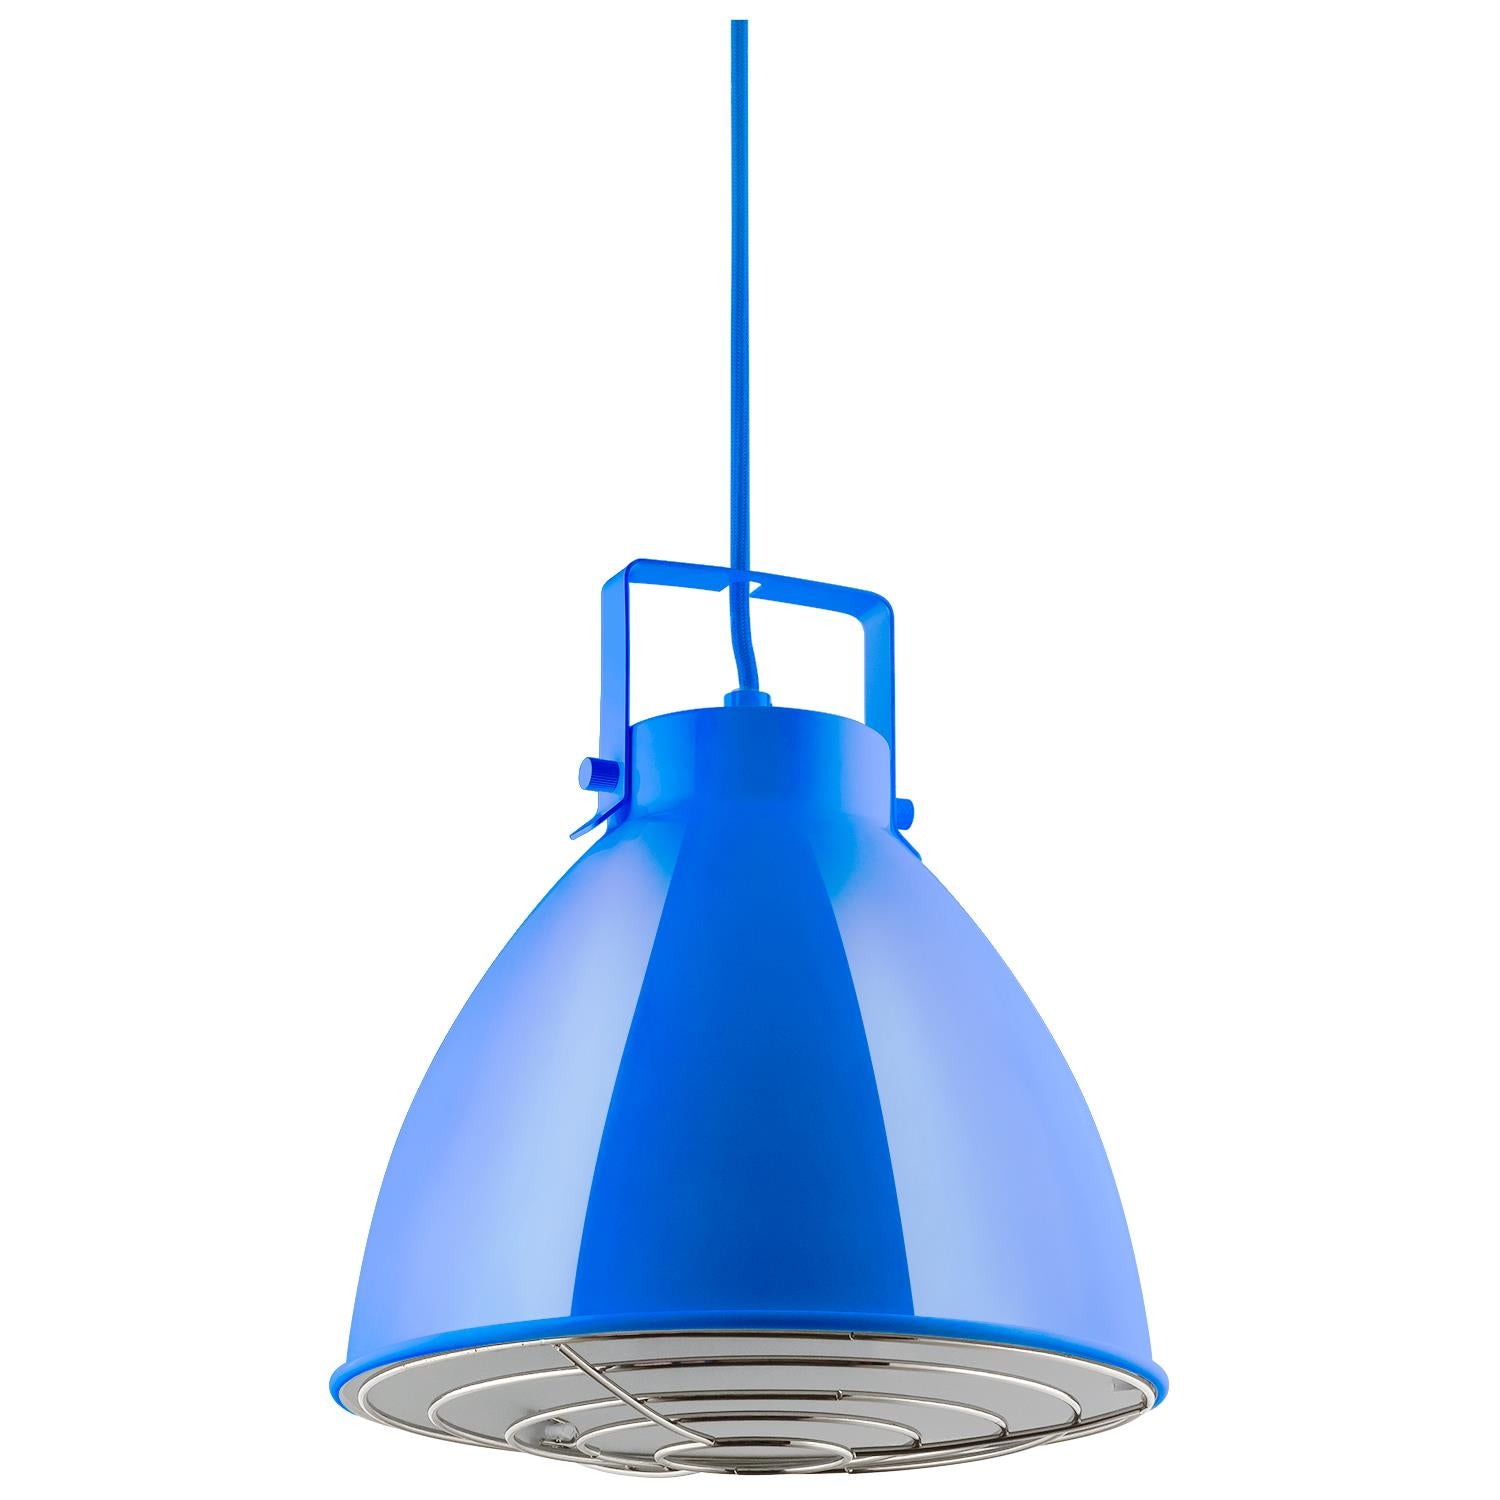 10" Modern Zed Metal Colored LED Canopy Shaped Pendant Light - 60W, 120V - (Medium) E26 Base - Residential Ceiling Pendant